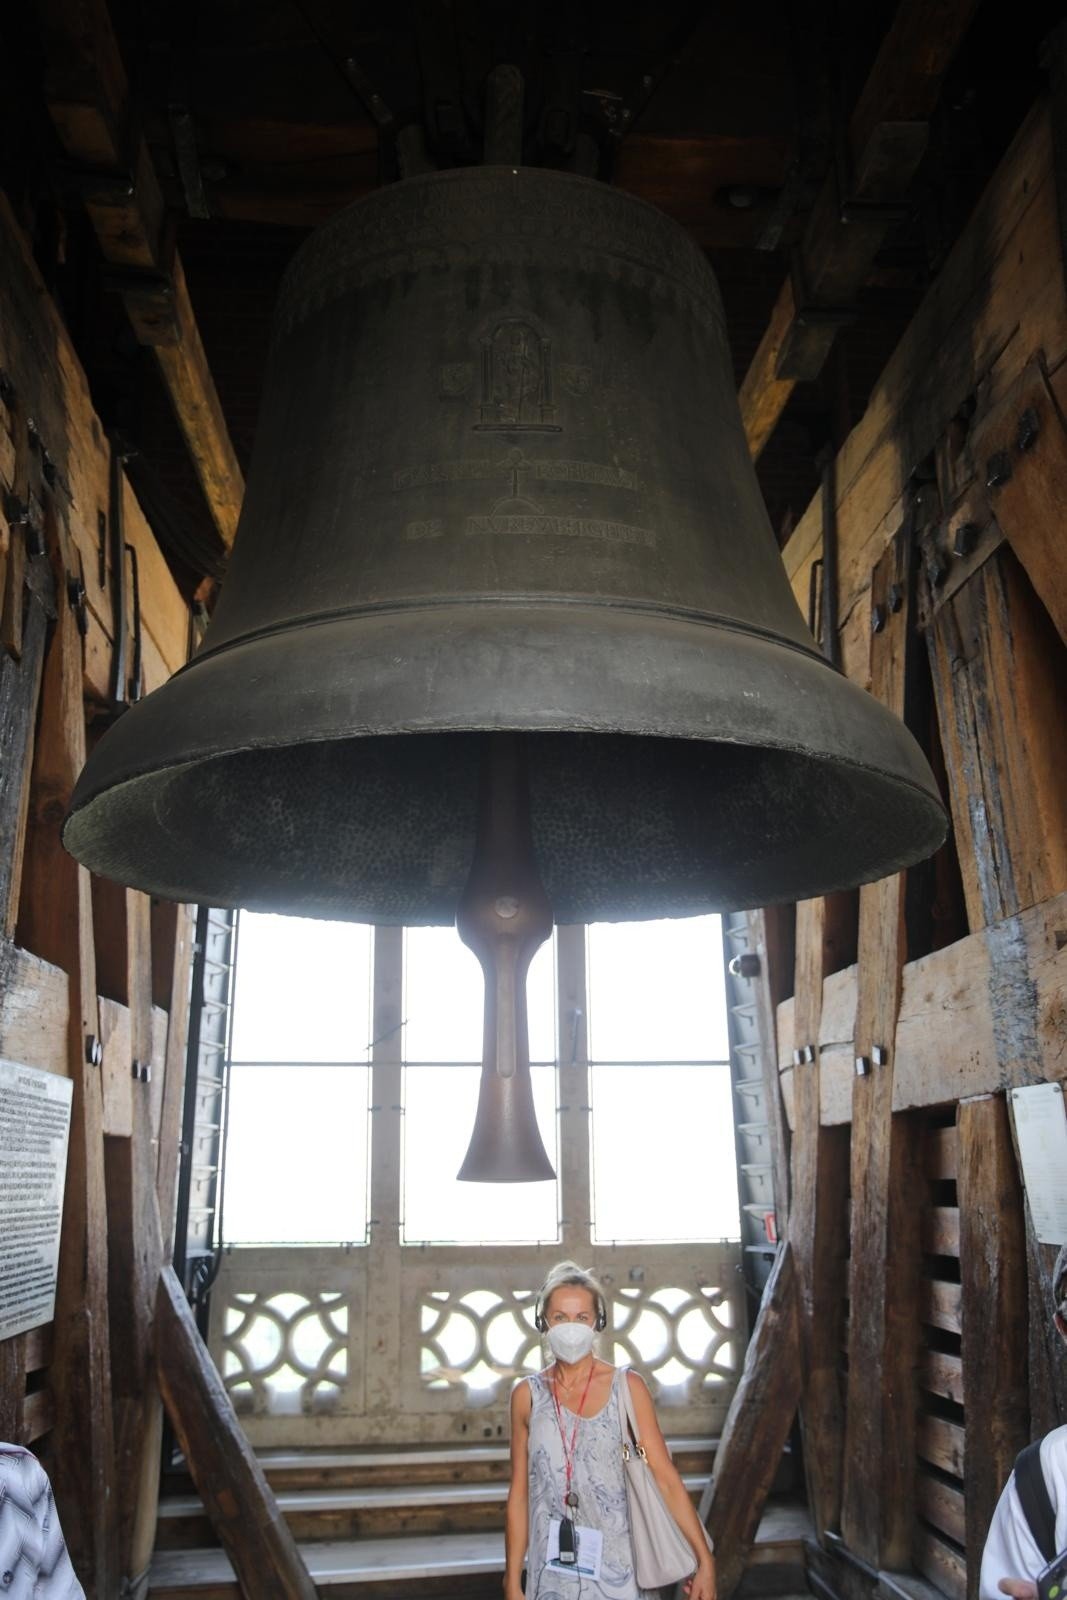 Od 500 lat dźwięk dzwonu Zygmunt towarzyszy krakowianom w najważniejszych  chwilach dla miasta i państwa | Gazeta Krakowska